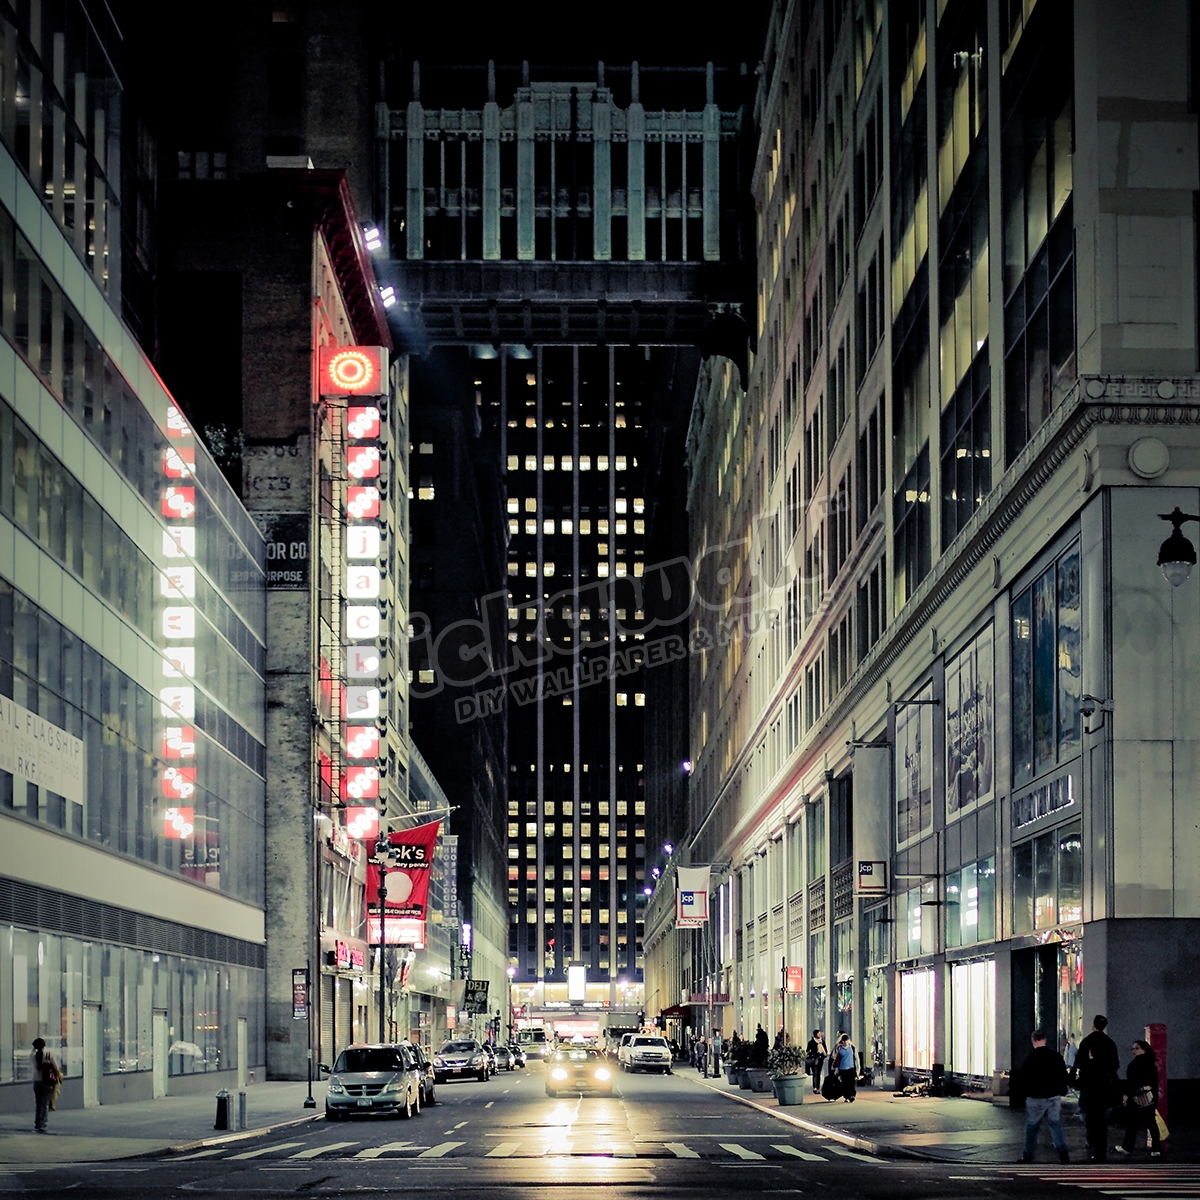 Street of New York at night - Pickawall